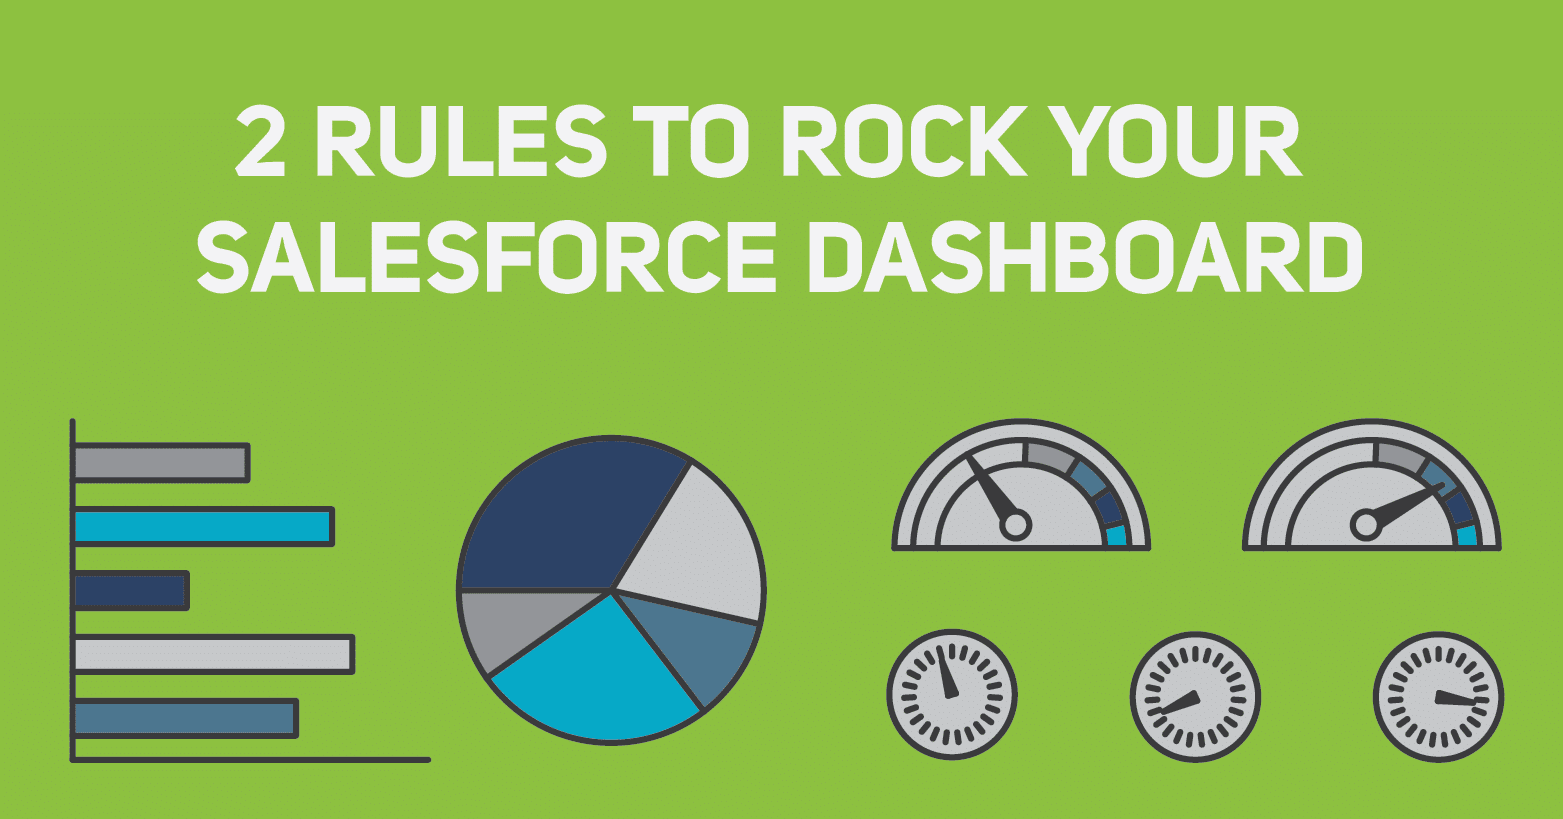 Salesforce-Dashboard-Rules